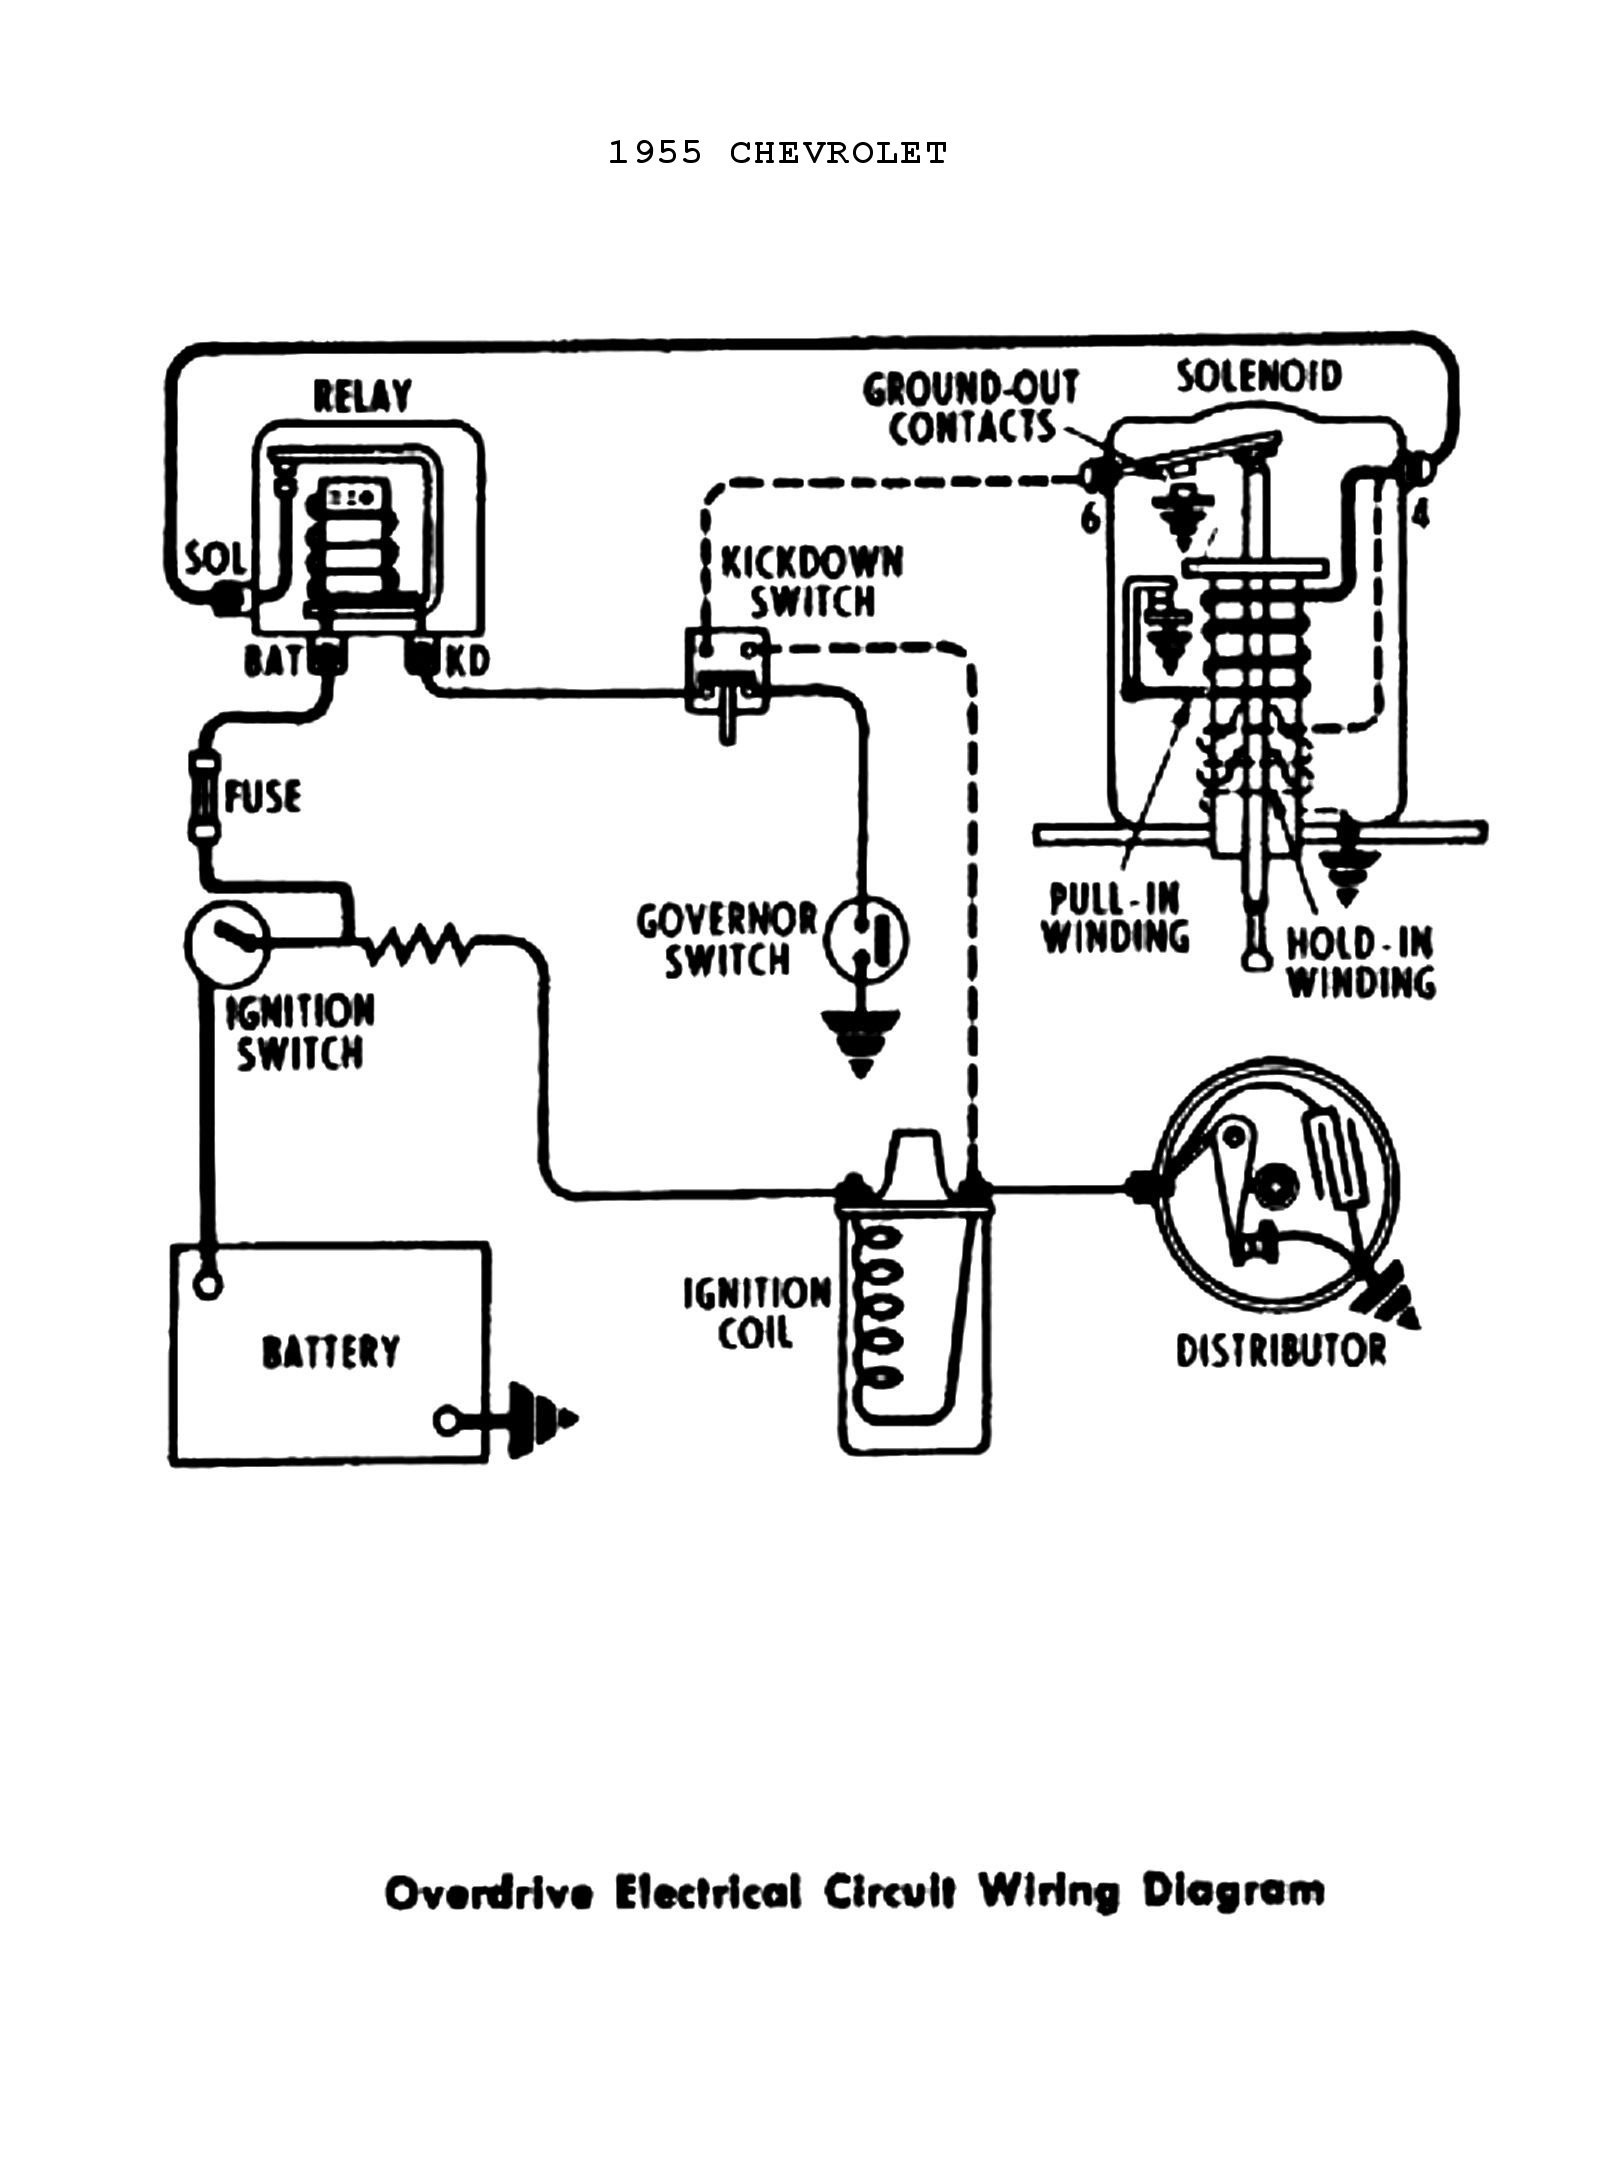 Club Car Wiring Diagram Ignition Switch Wiring Diagram Wiring Diagram Of Club Car Wiring Diagram